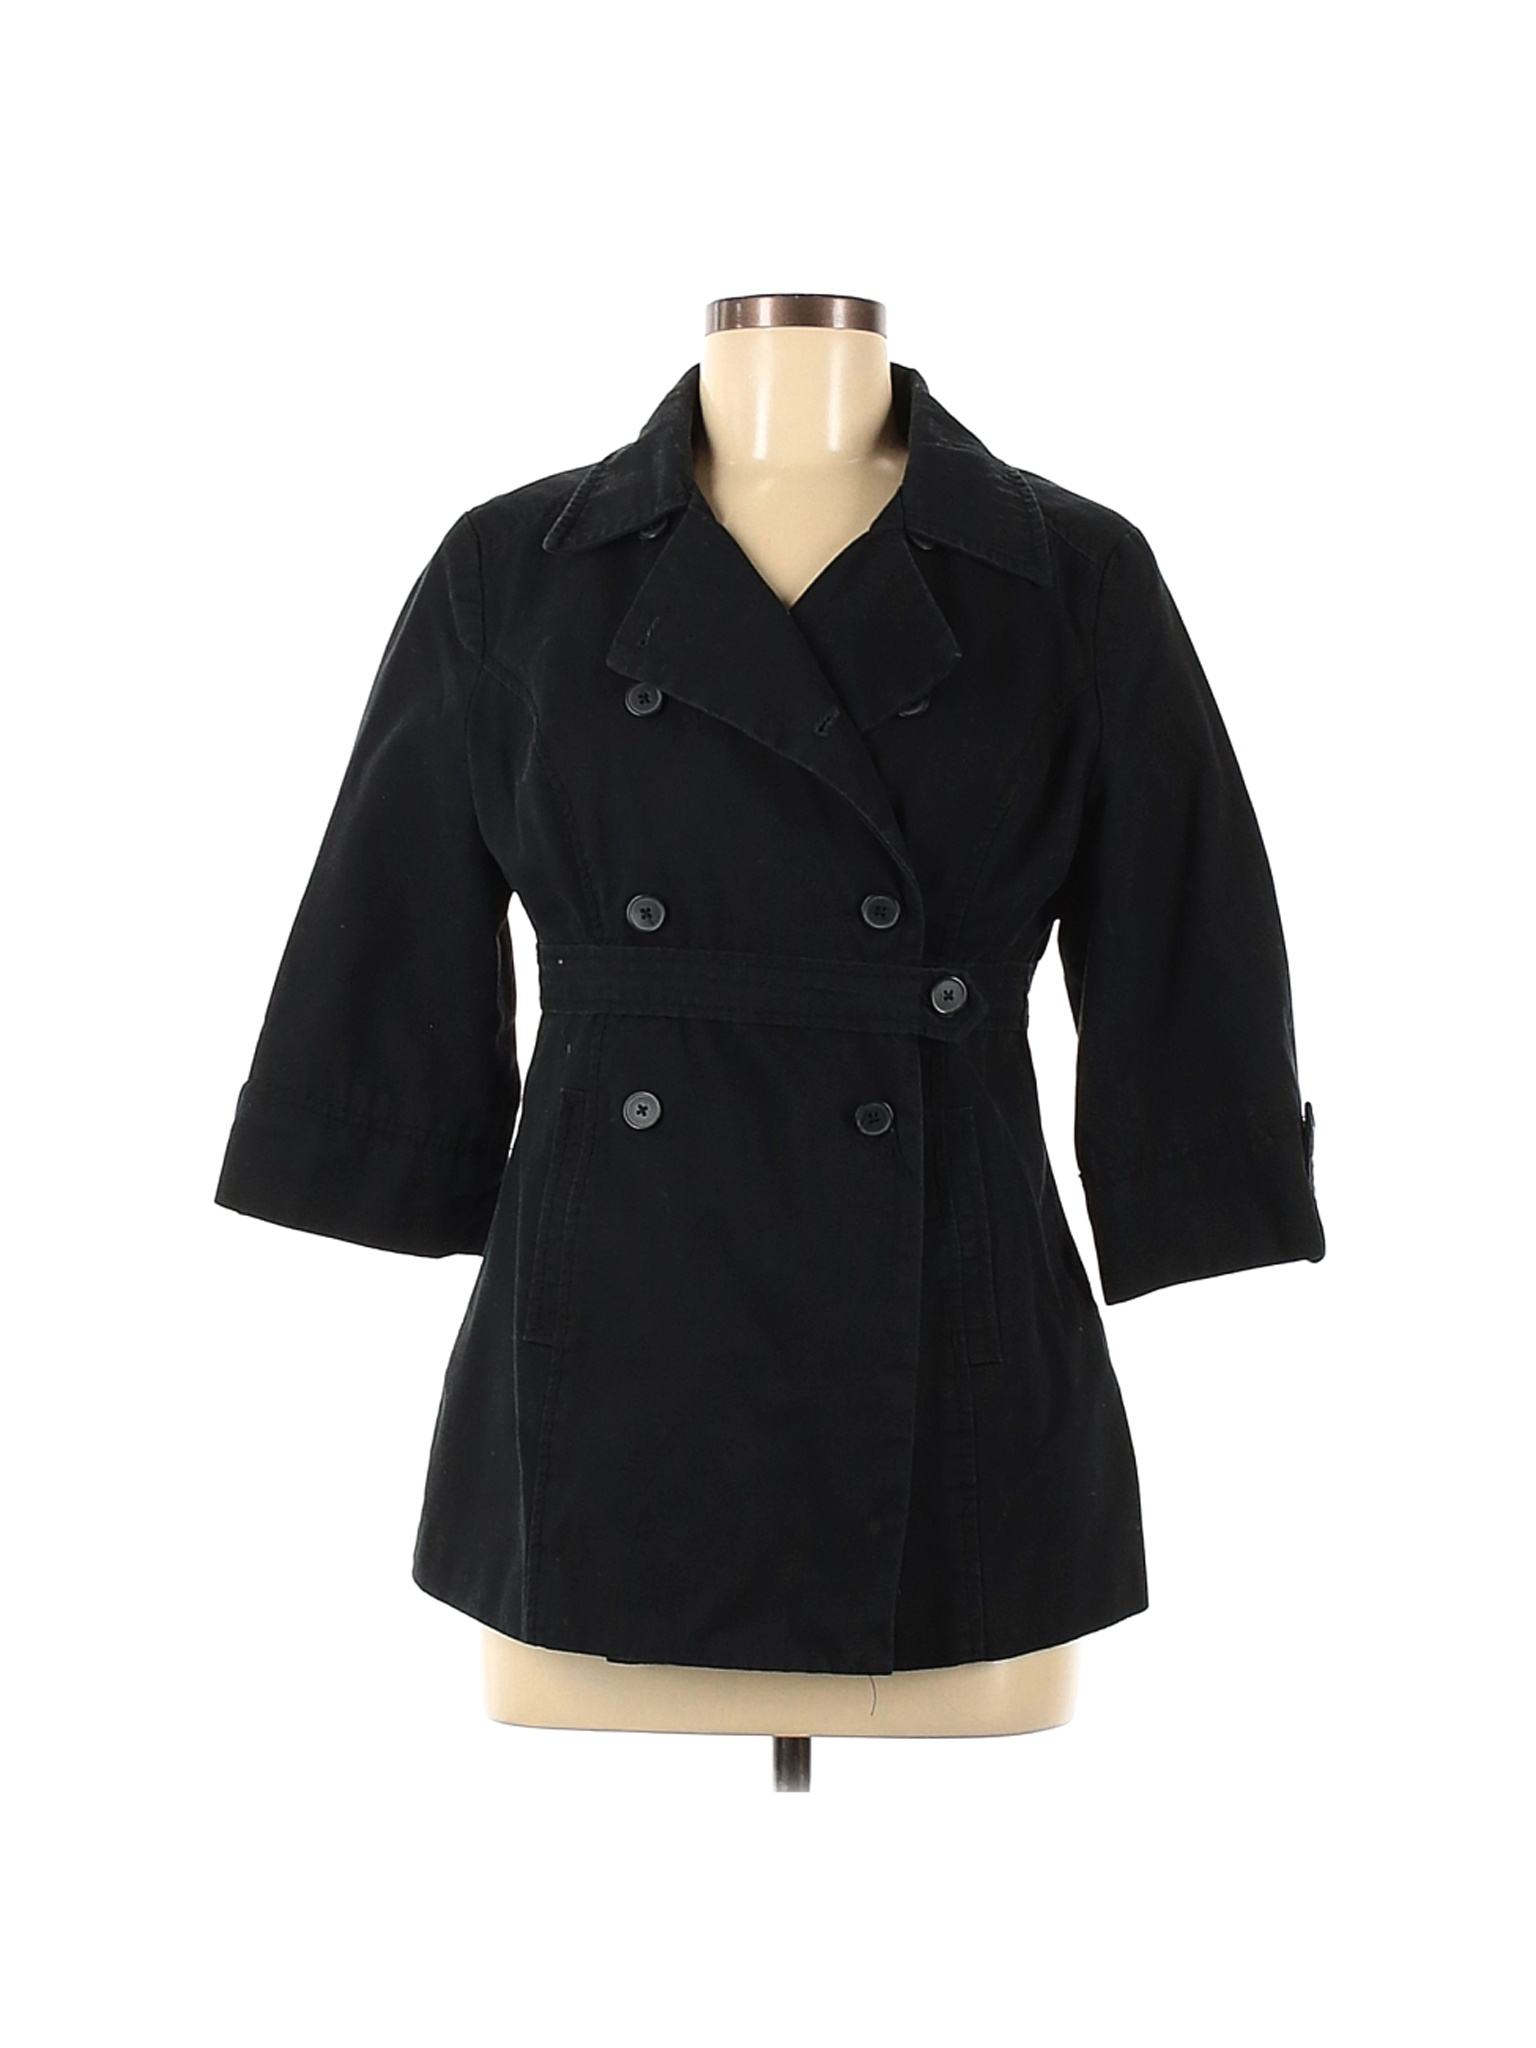 Old Navy Women Black Jacket M | eBay